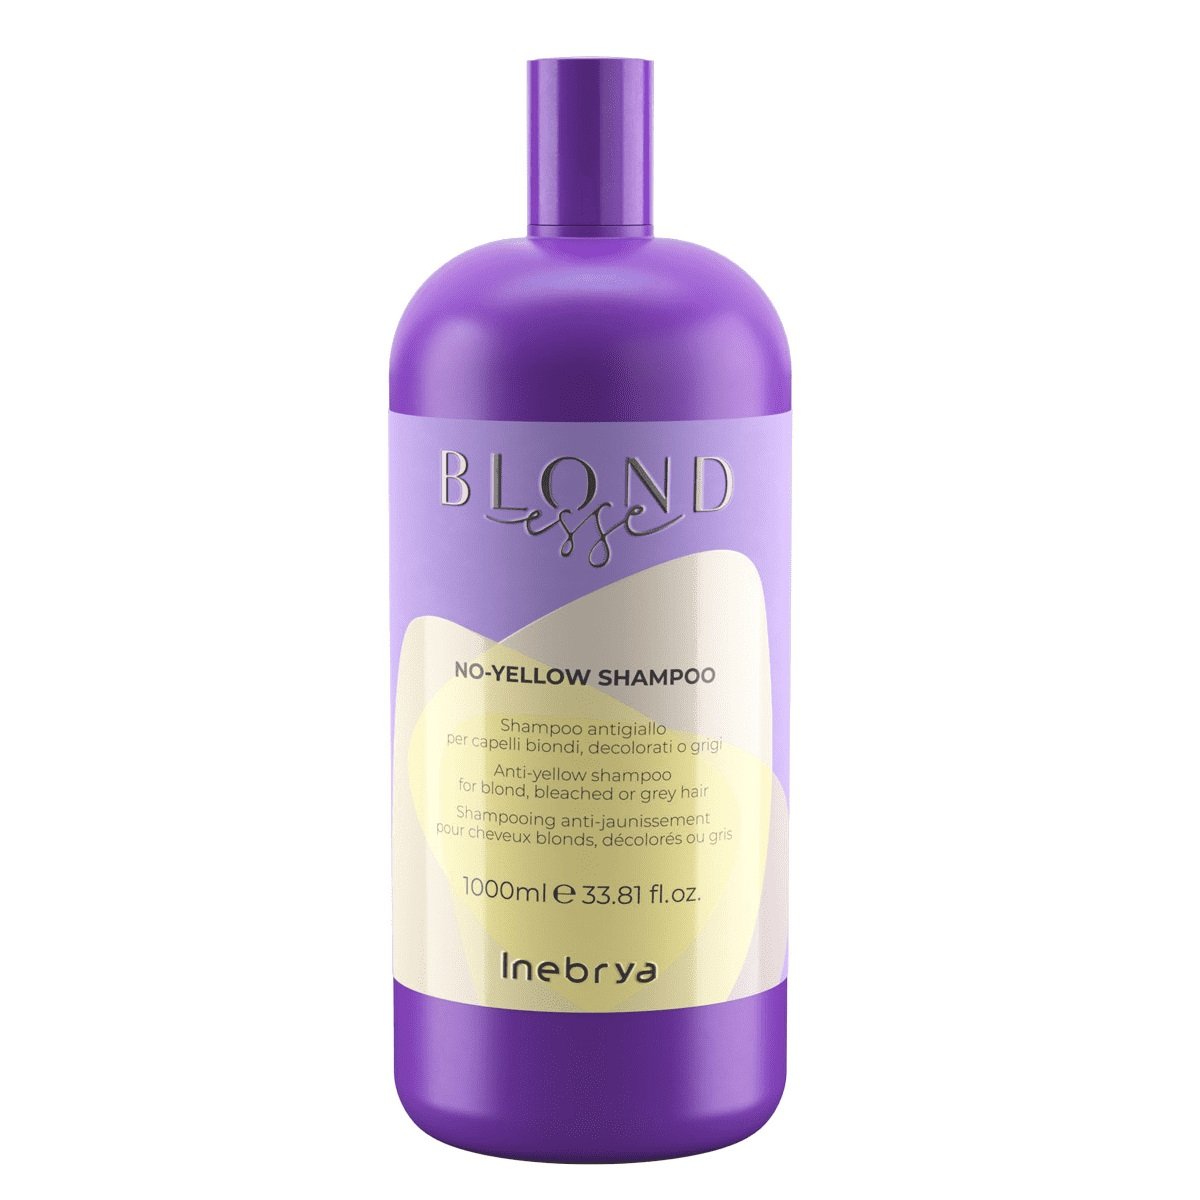 Inebrya Blondesse No-Yellow Shampoo szampon do włosów blond rozjaśnianych i siwych 1000ml primavera-8008277262369